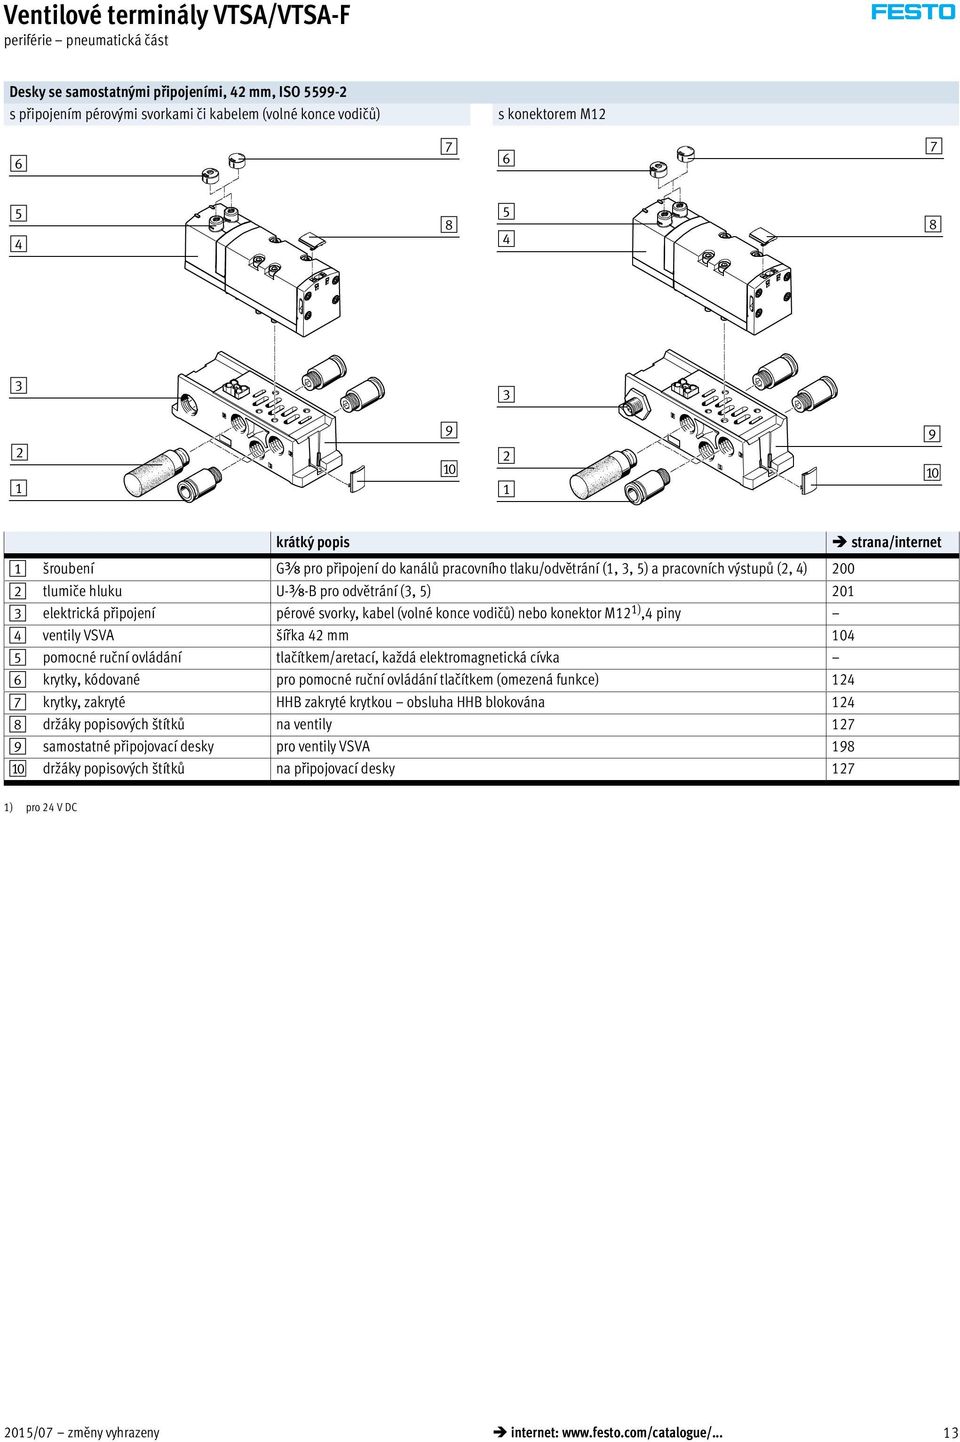 svorky, kabel (volné konce vodičů) nebo konektor M12 1),4 piny 4 ventily VSVA šířka 42 mm 104 5 pomocné ruční ovládání tlačítkem/aretací, každá elektromagnetická cívka 6 krytky, kódované pro pomocné